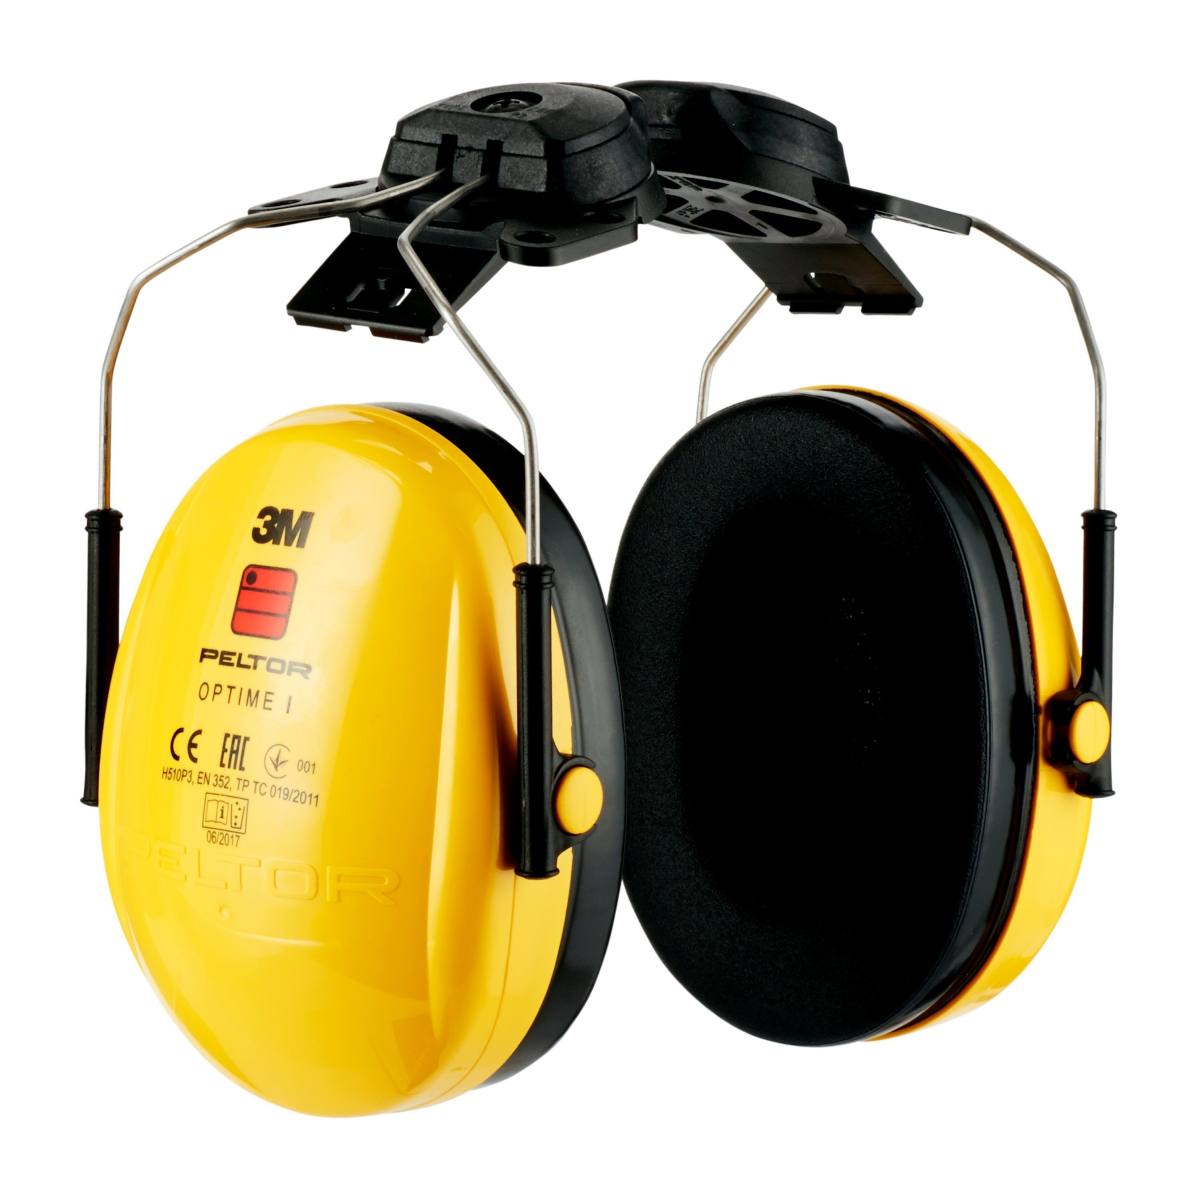 3M PELTOR Casque antibruit Optime I, fixation sur casque, avec adaptateur pour casque, H510P3 (87 à 98 dB)